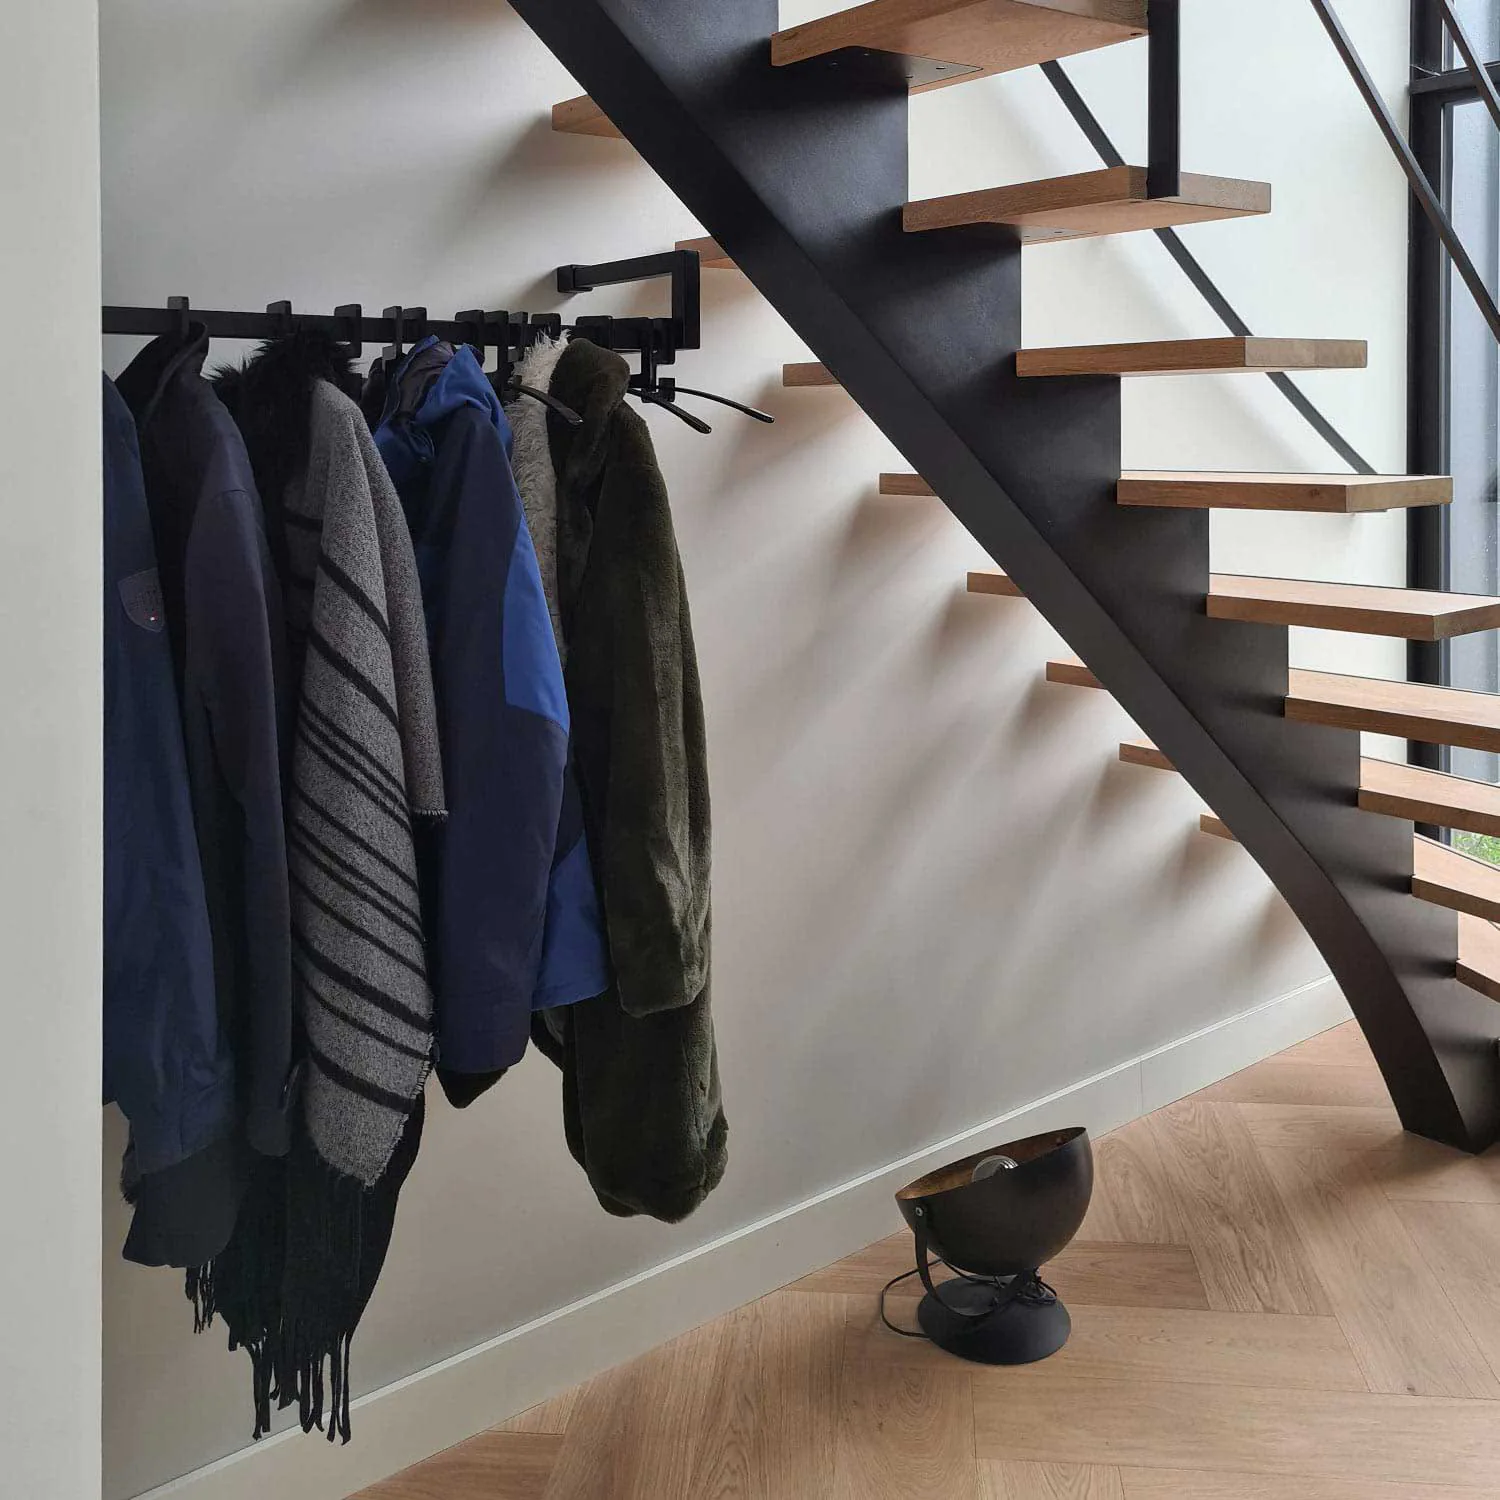 Schwarzer Edelstahl-Garderobenständer an der Treppe mit Kleiderbügeln und Mänteln